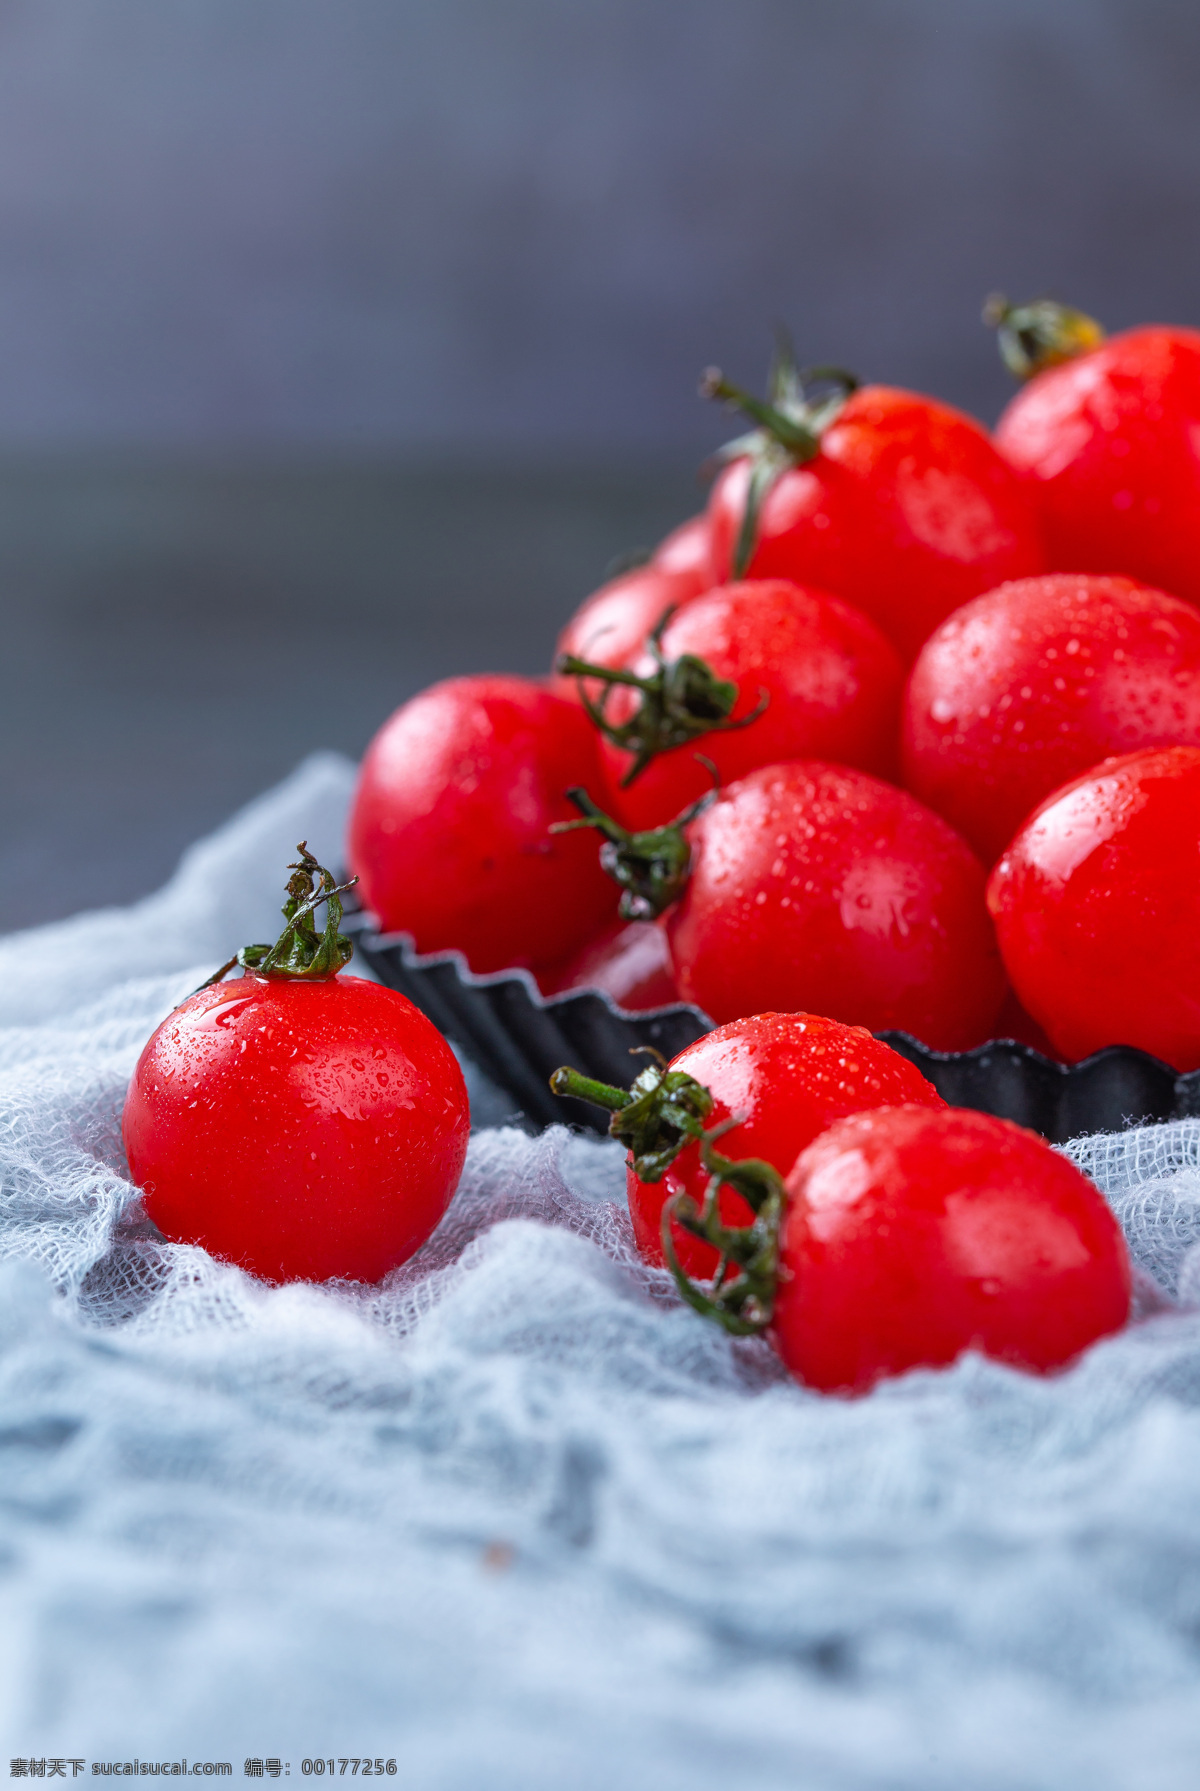 西红柿 番茄 小西红柿 水果 水果拍摄 圣女果拍摄 餐饮美食